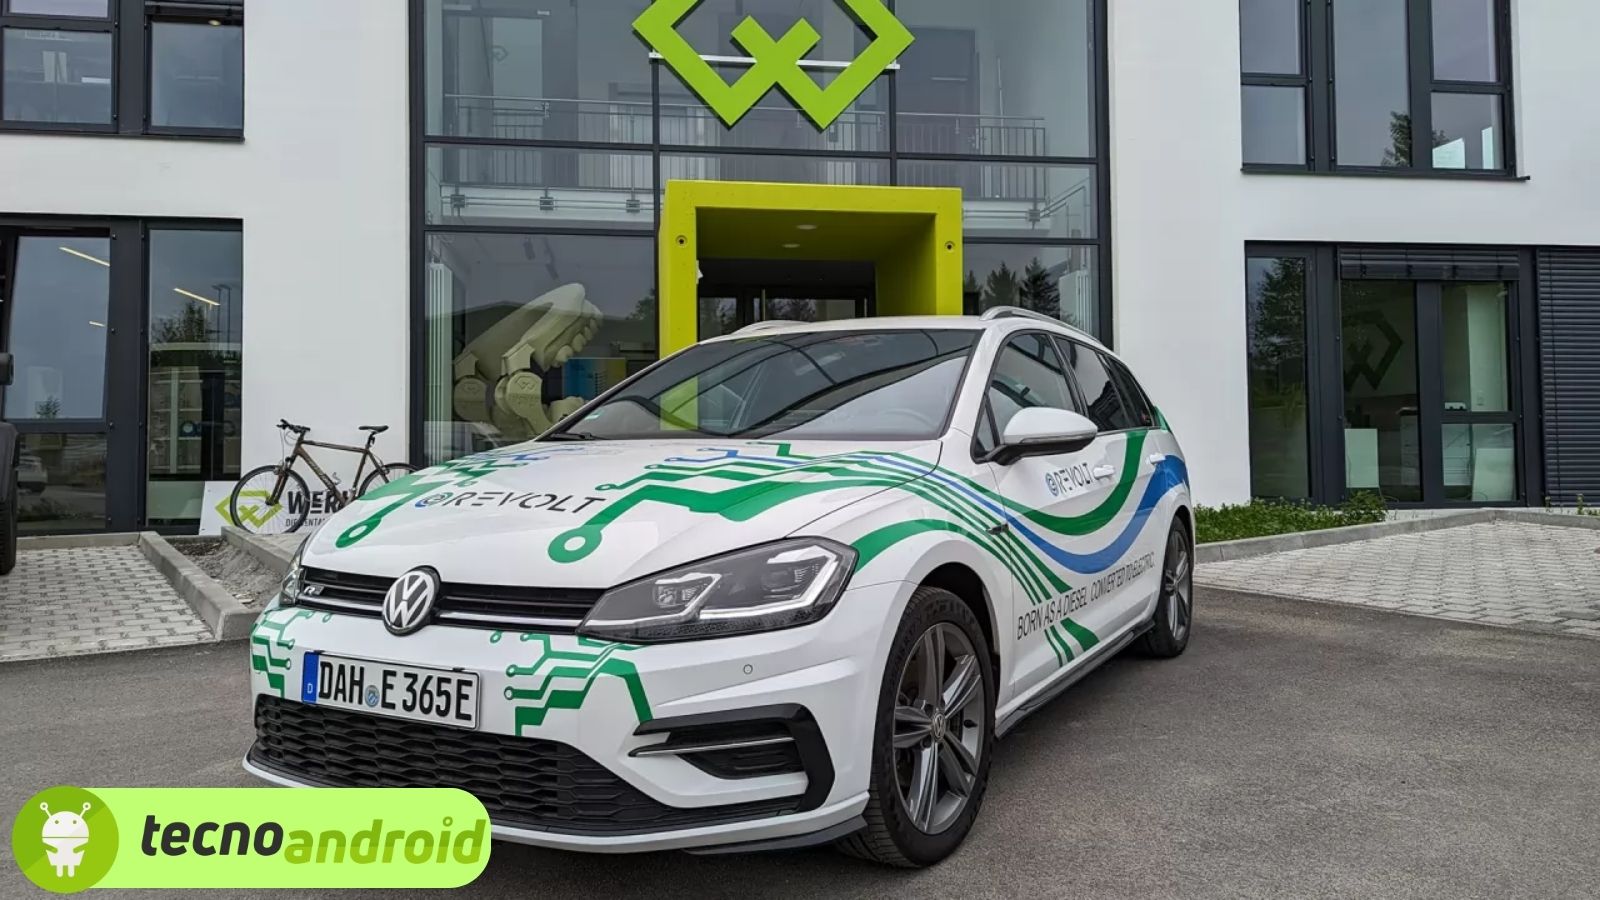 Una startup europea trasforma le auto in veicoli elettrici in 8 ore 